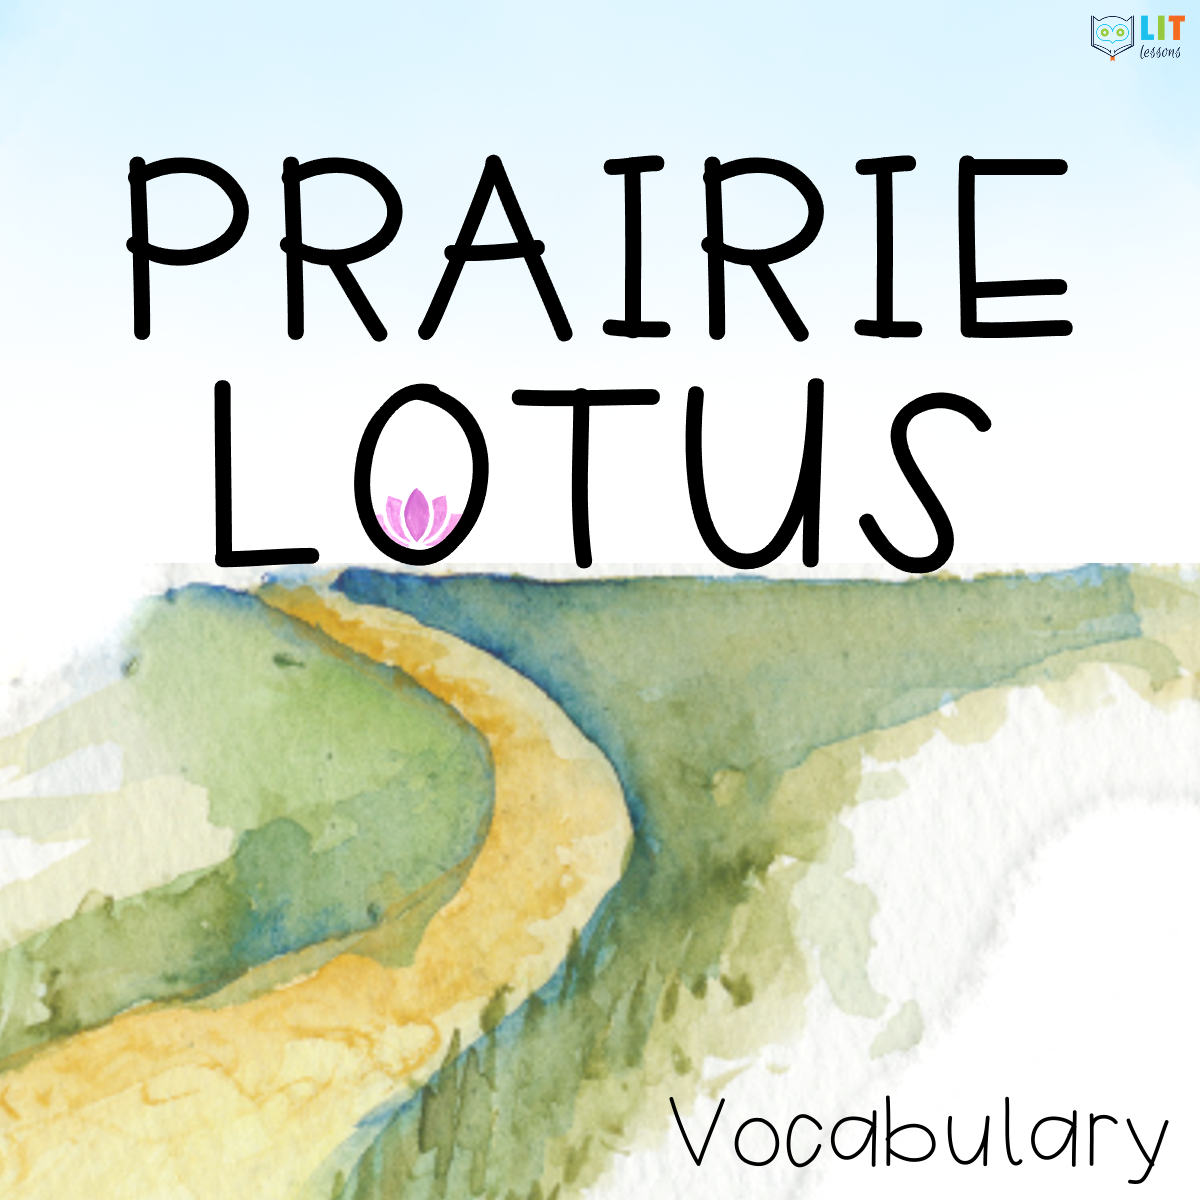 Prairie Lotus Vocabulary